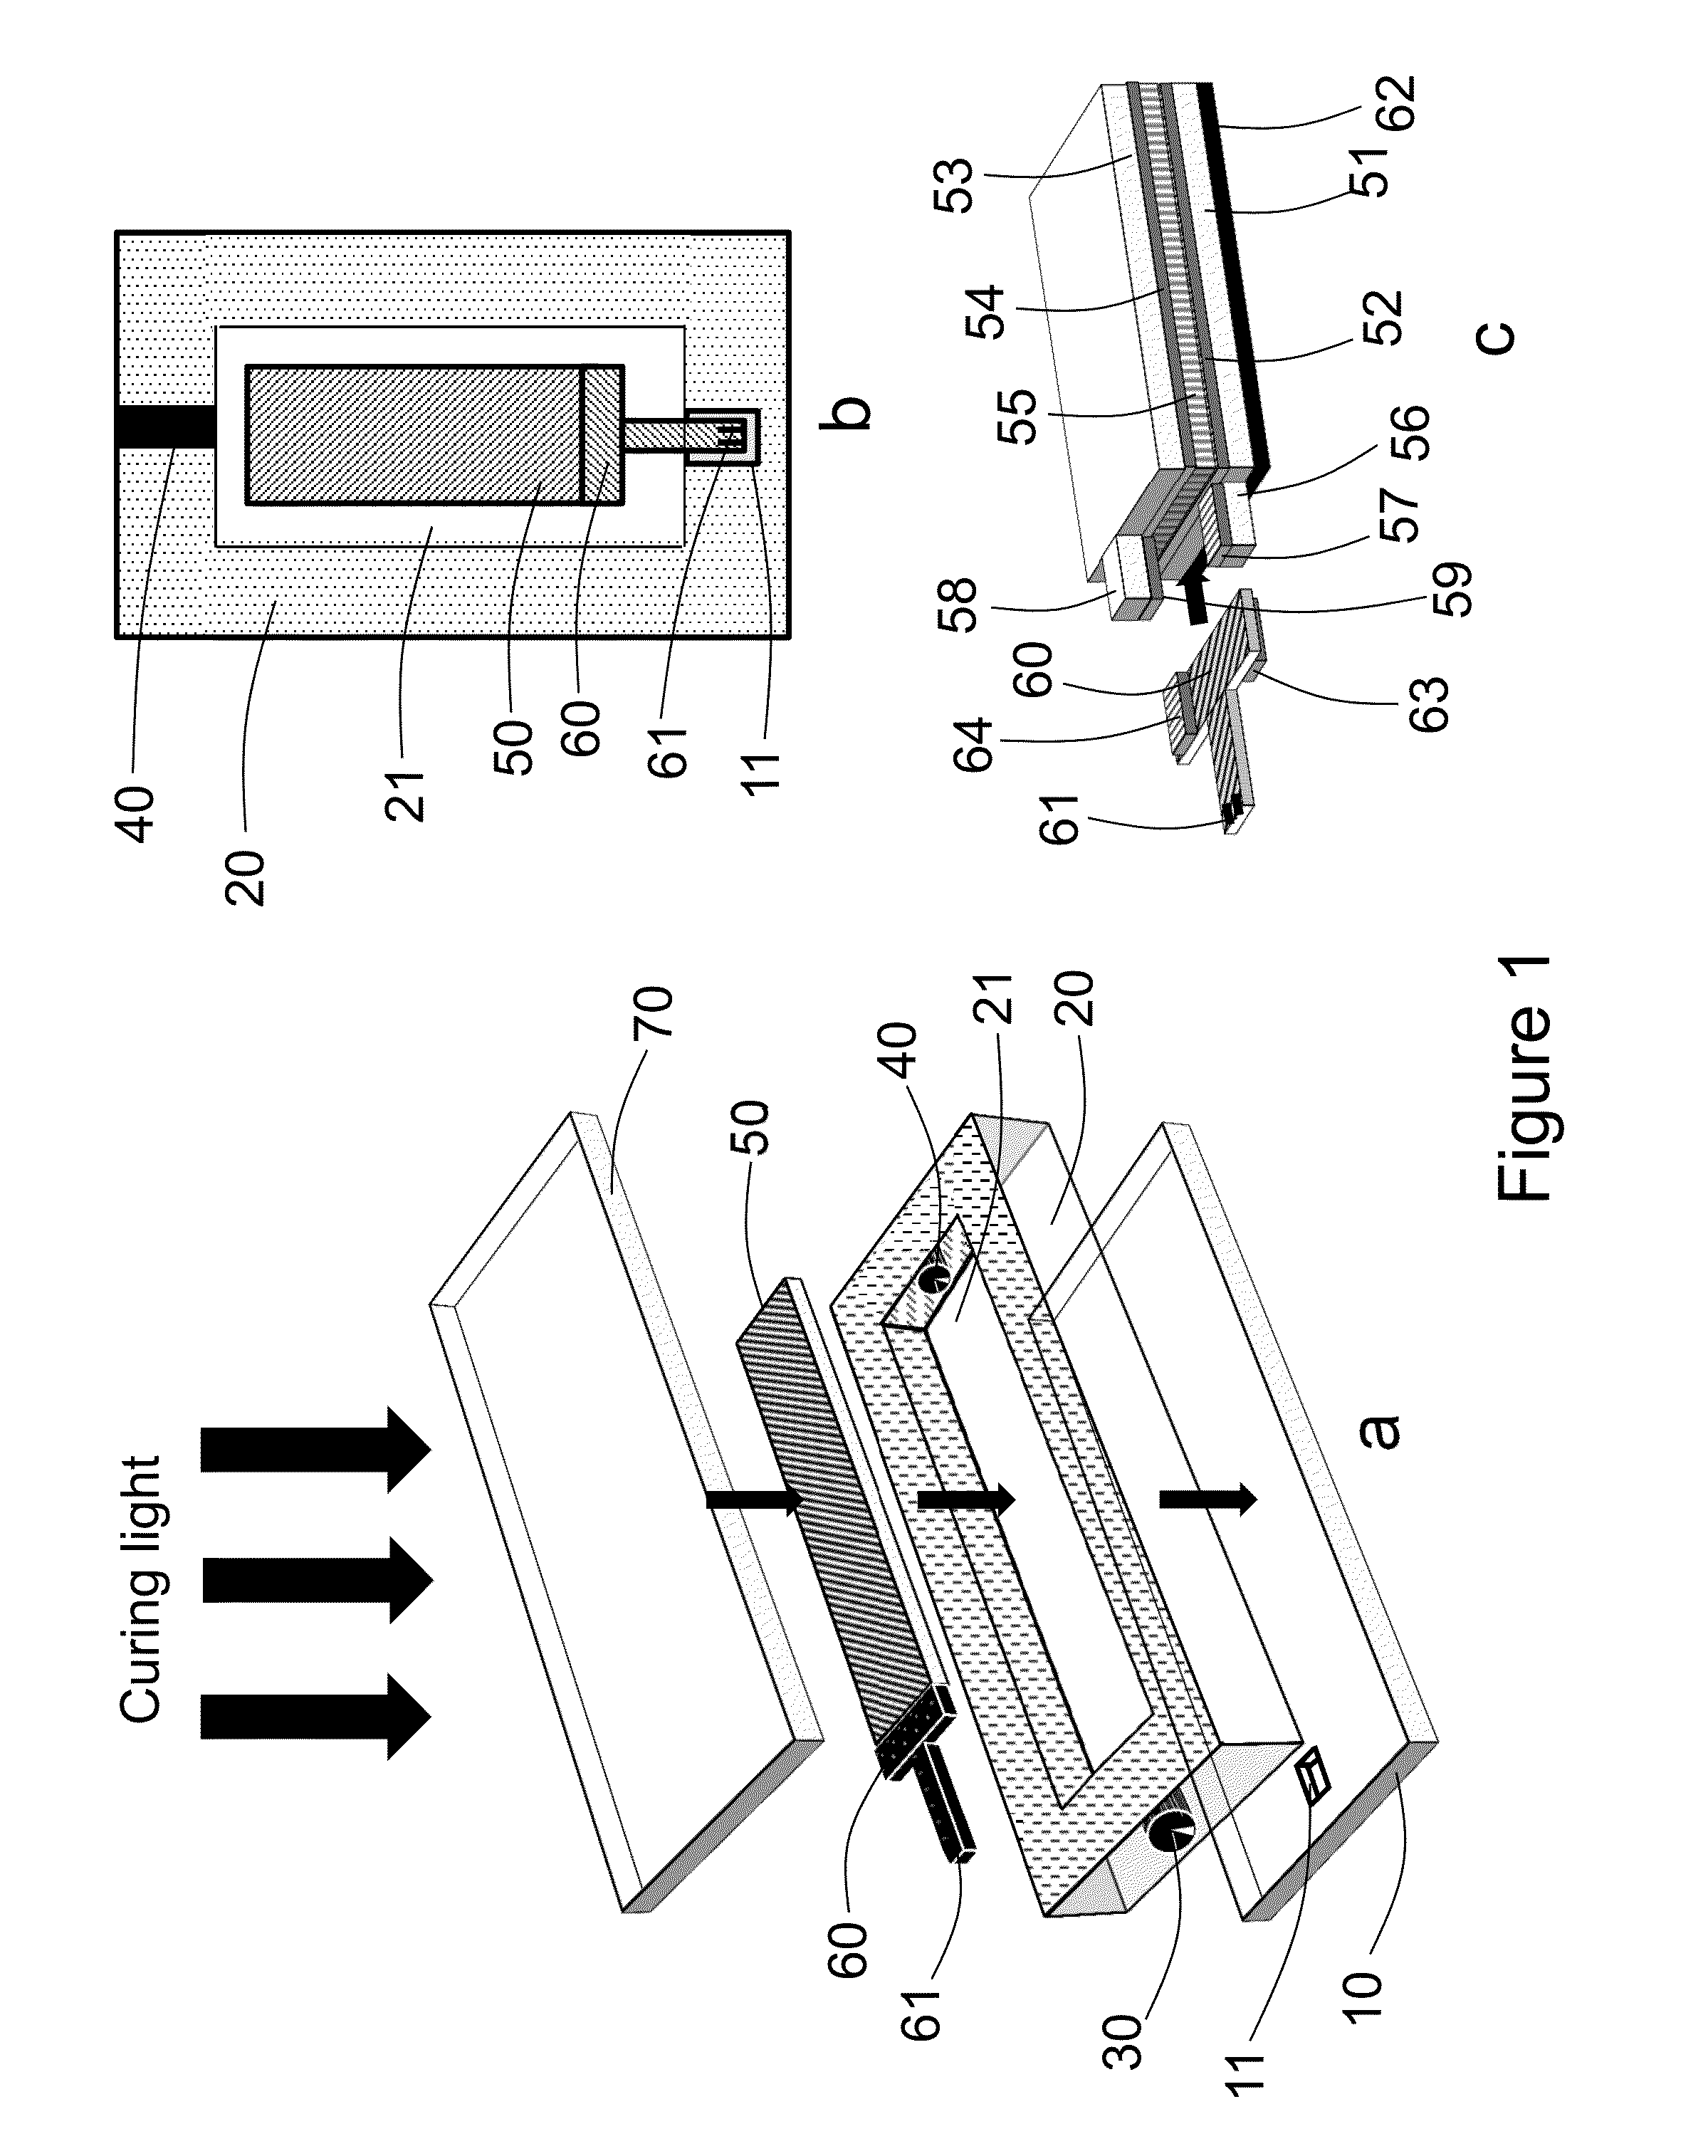 Embedded electrooptical display